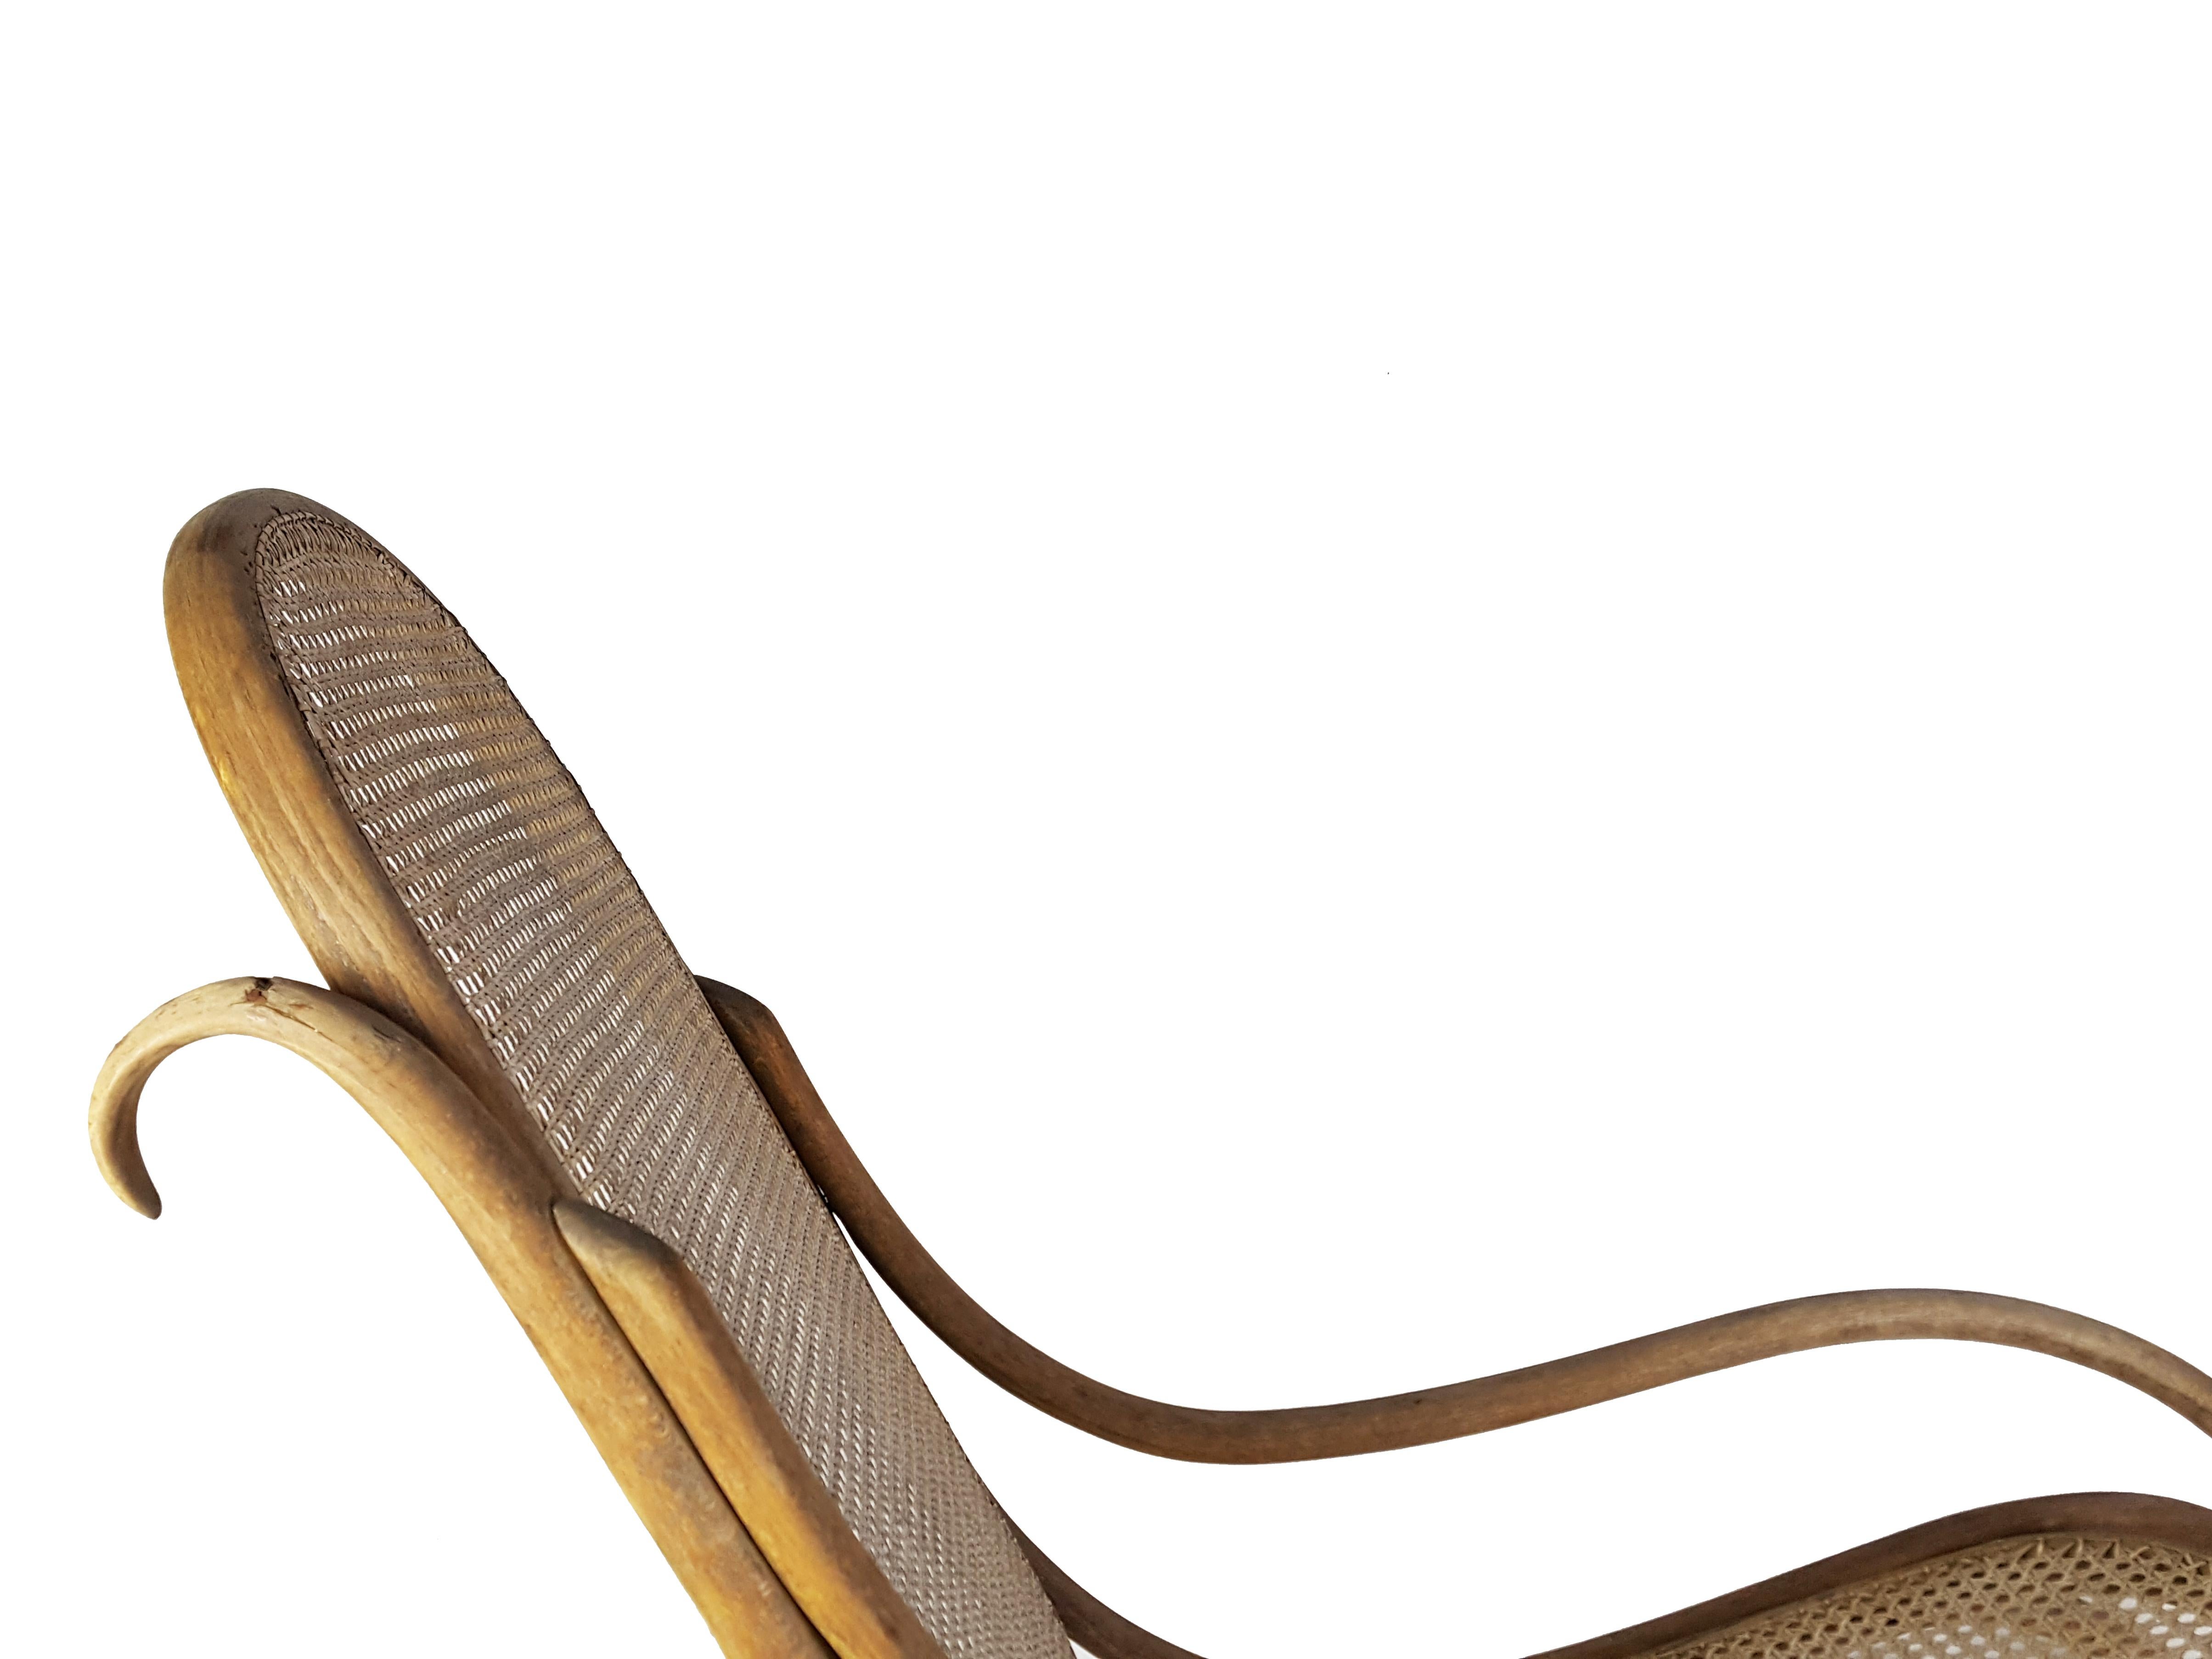 Schaukelstuhl aus Bugholz und Stroh, hergestellt von Mondus im frühen 20. Jahrhundert.
Der Sessel ist vollständig und trägt das originale Label des Herstellers: 